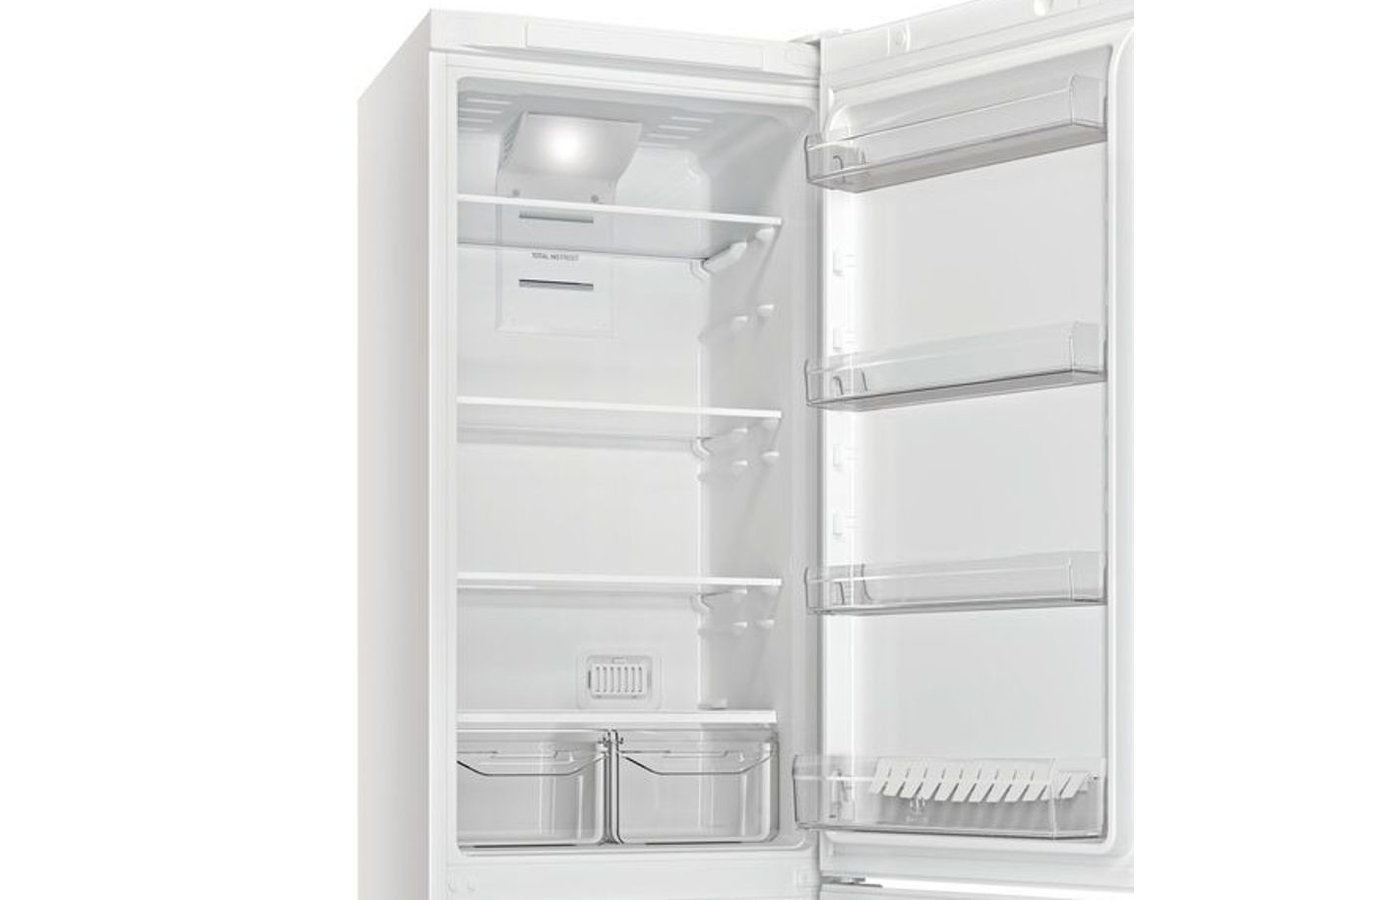 Индезит 5200 w. Индезит ds4200w. Холодильник Индезит 5200w.